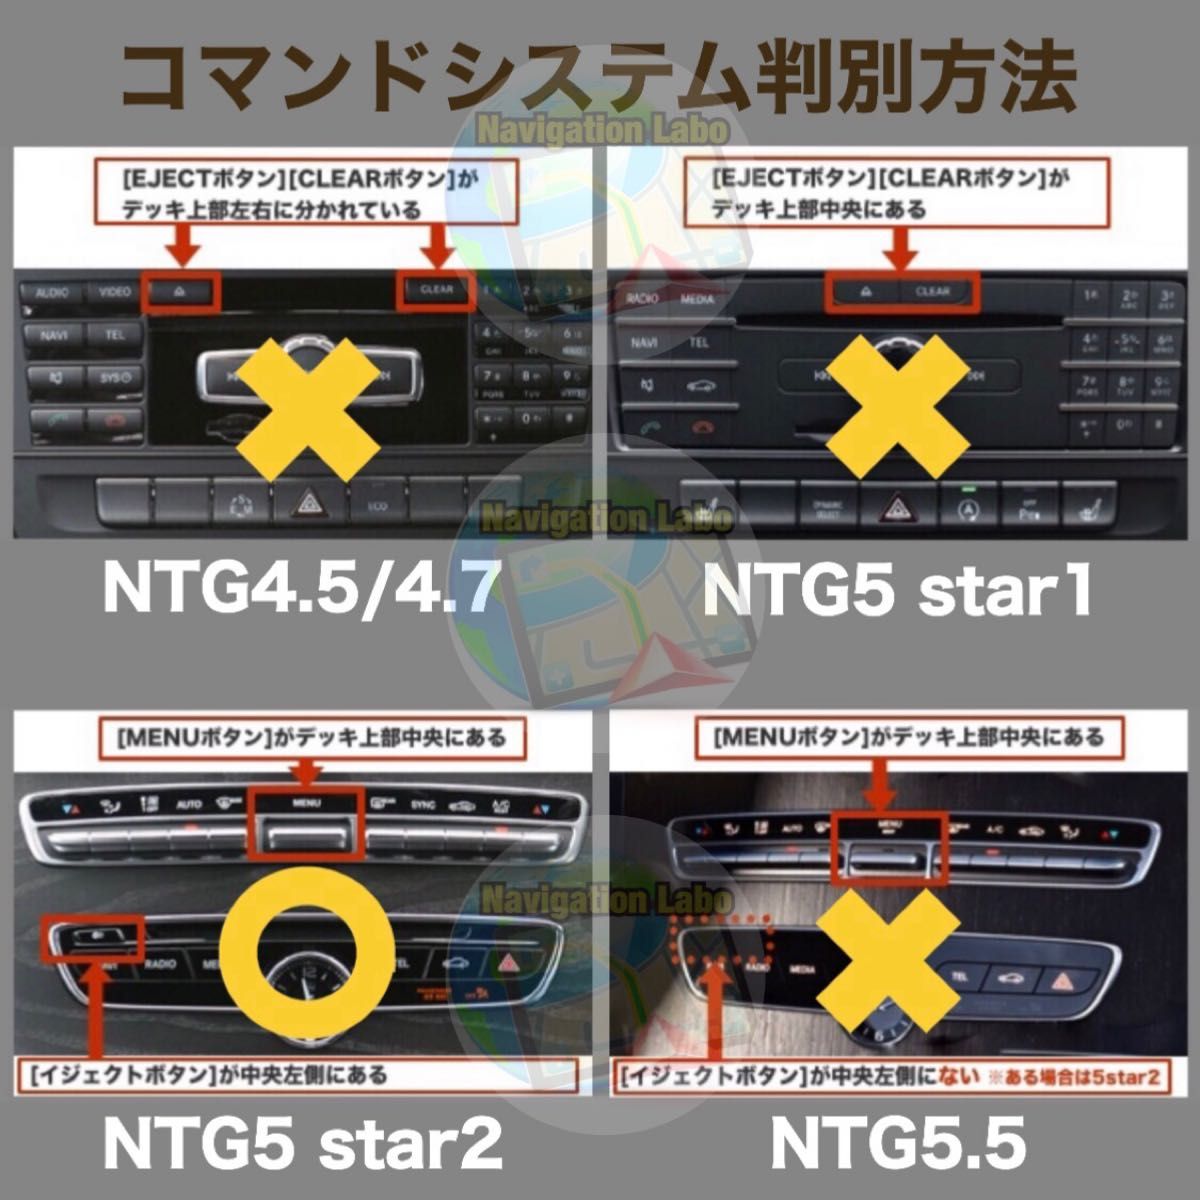 メルセデスベンツ NTG5 star2用 テレビ/DVD/ナビ キャンセラーソフト 